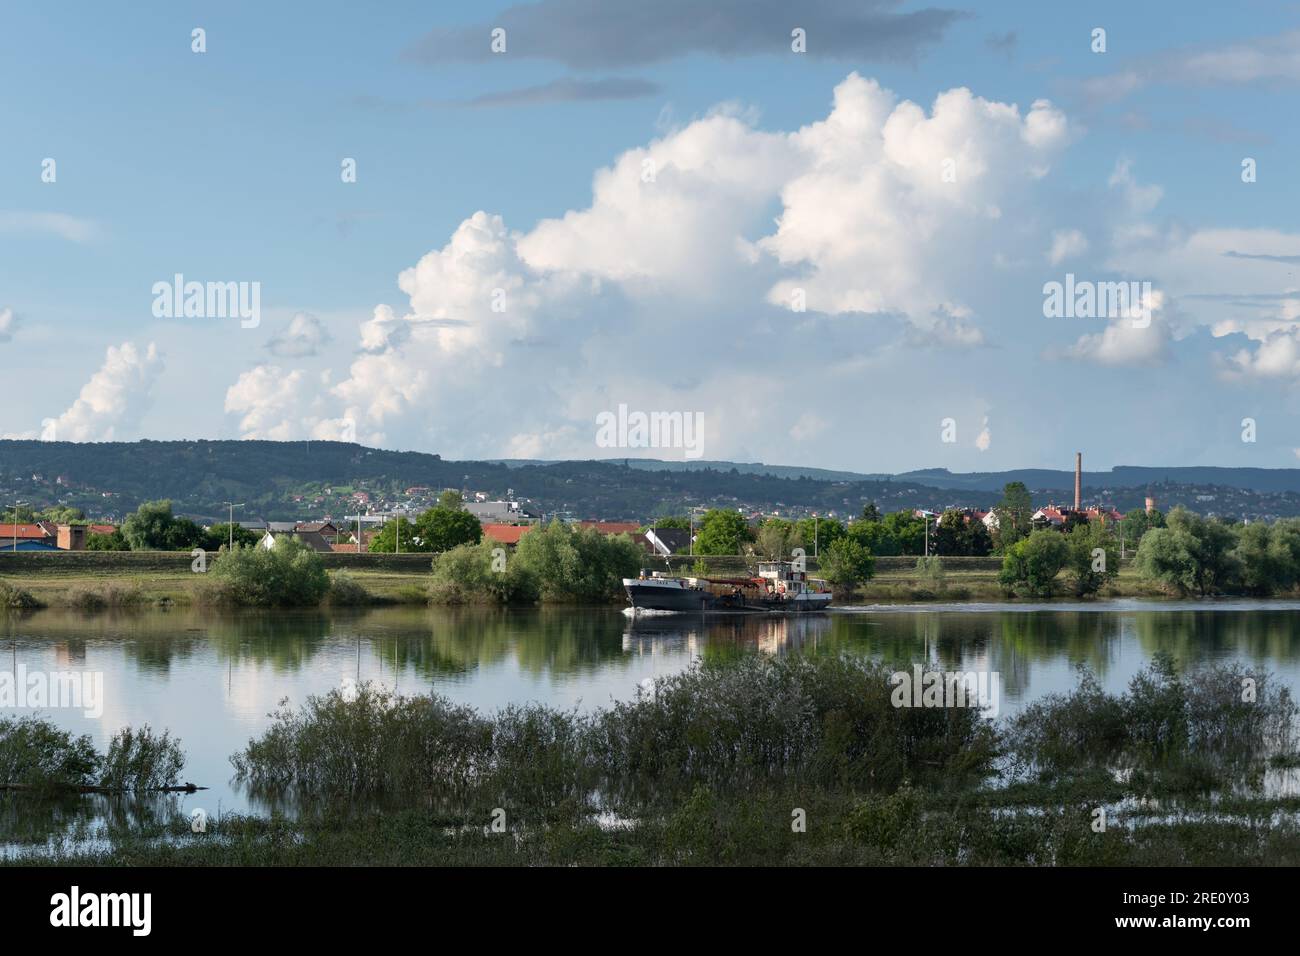 Das Schiff segelt auf dem Fluss Sava und einer großen Wolke am Himmel, Landschaft mit Fluss und Cumulus Wolke Stockfoto